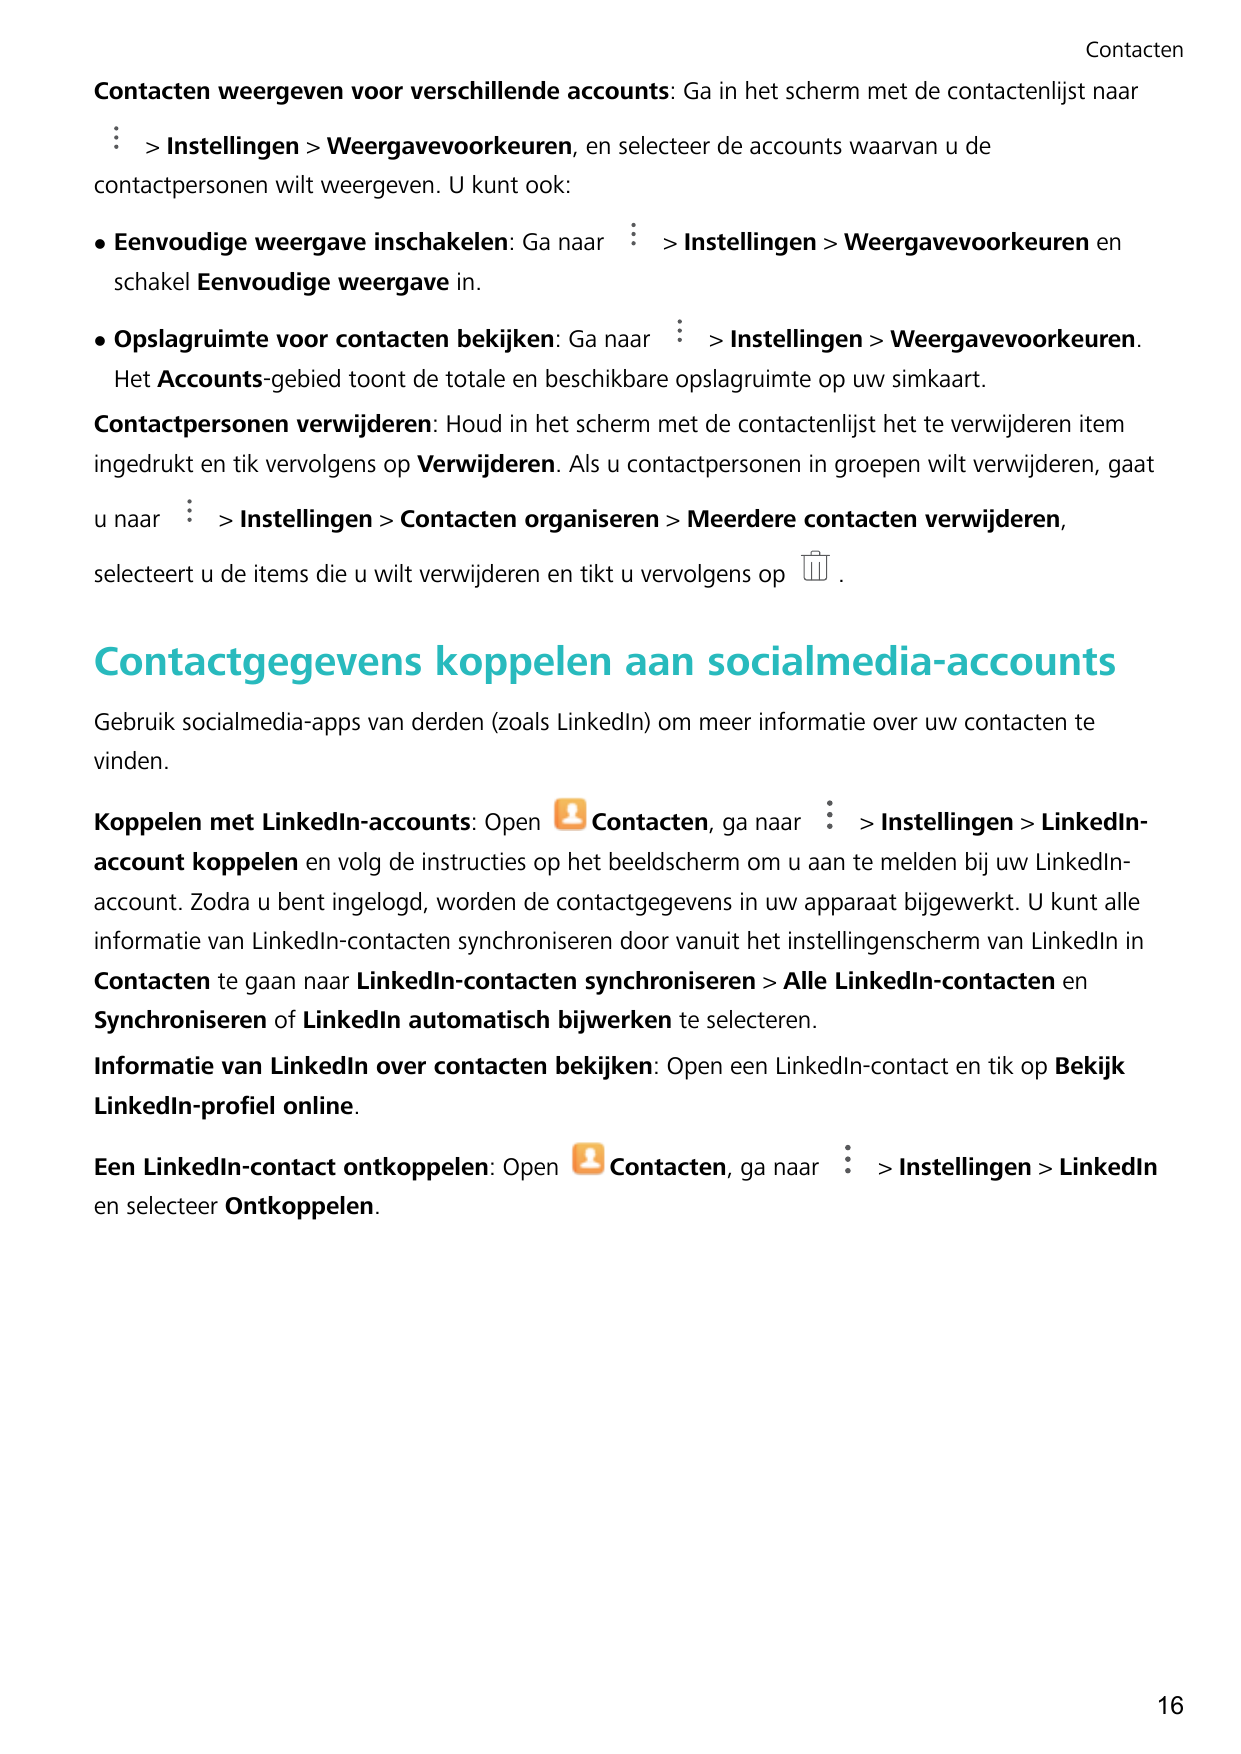 ContactenContacten weergeven voor verschillende accounts: Ga in het scherm met de contactenlijst naar> Instellingen > Weergavevo